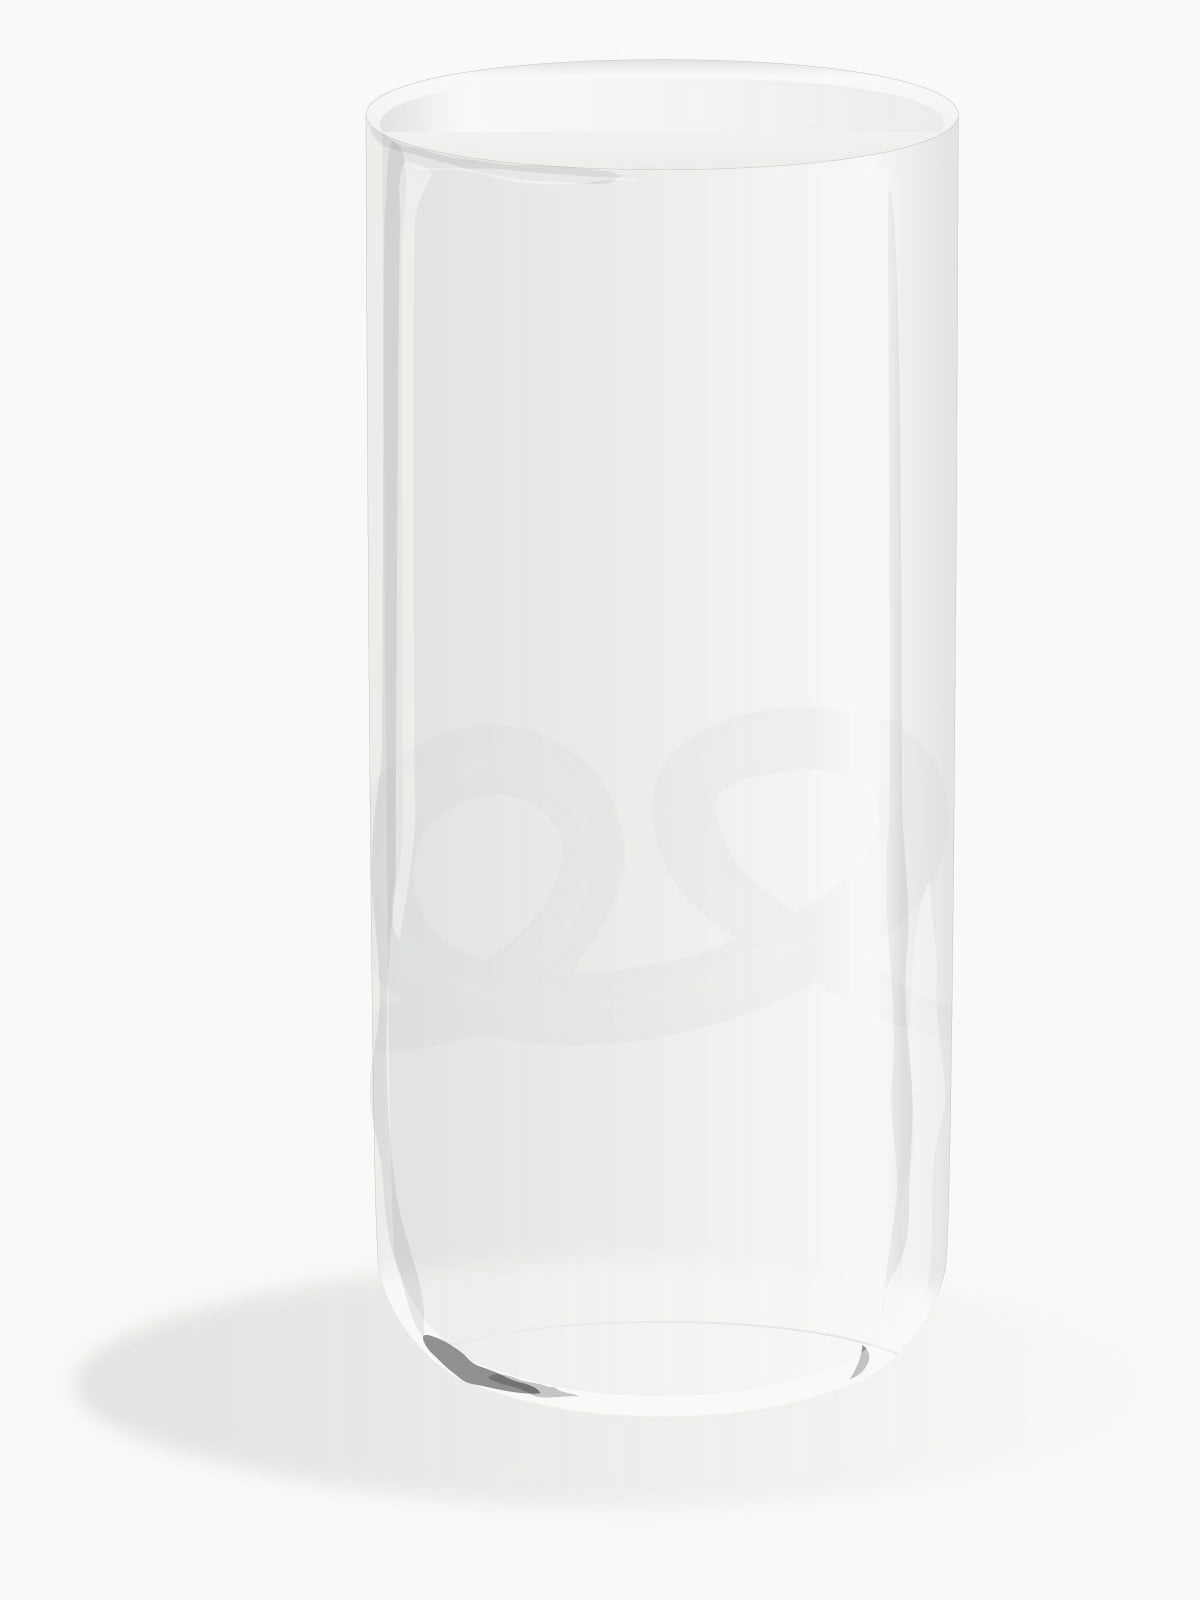 drink glass white knots 100% Capri design